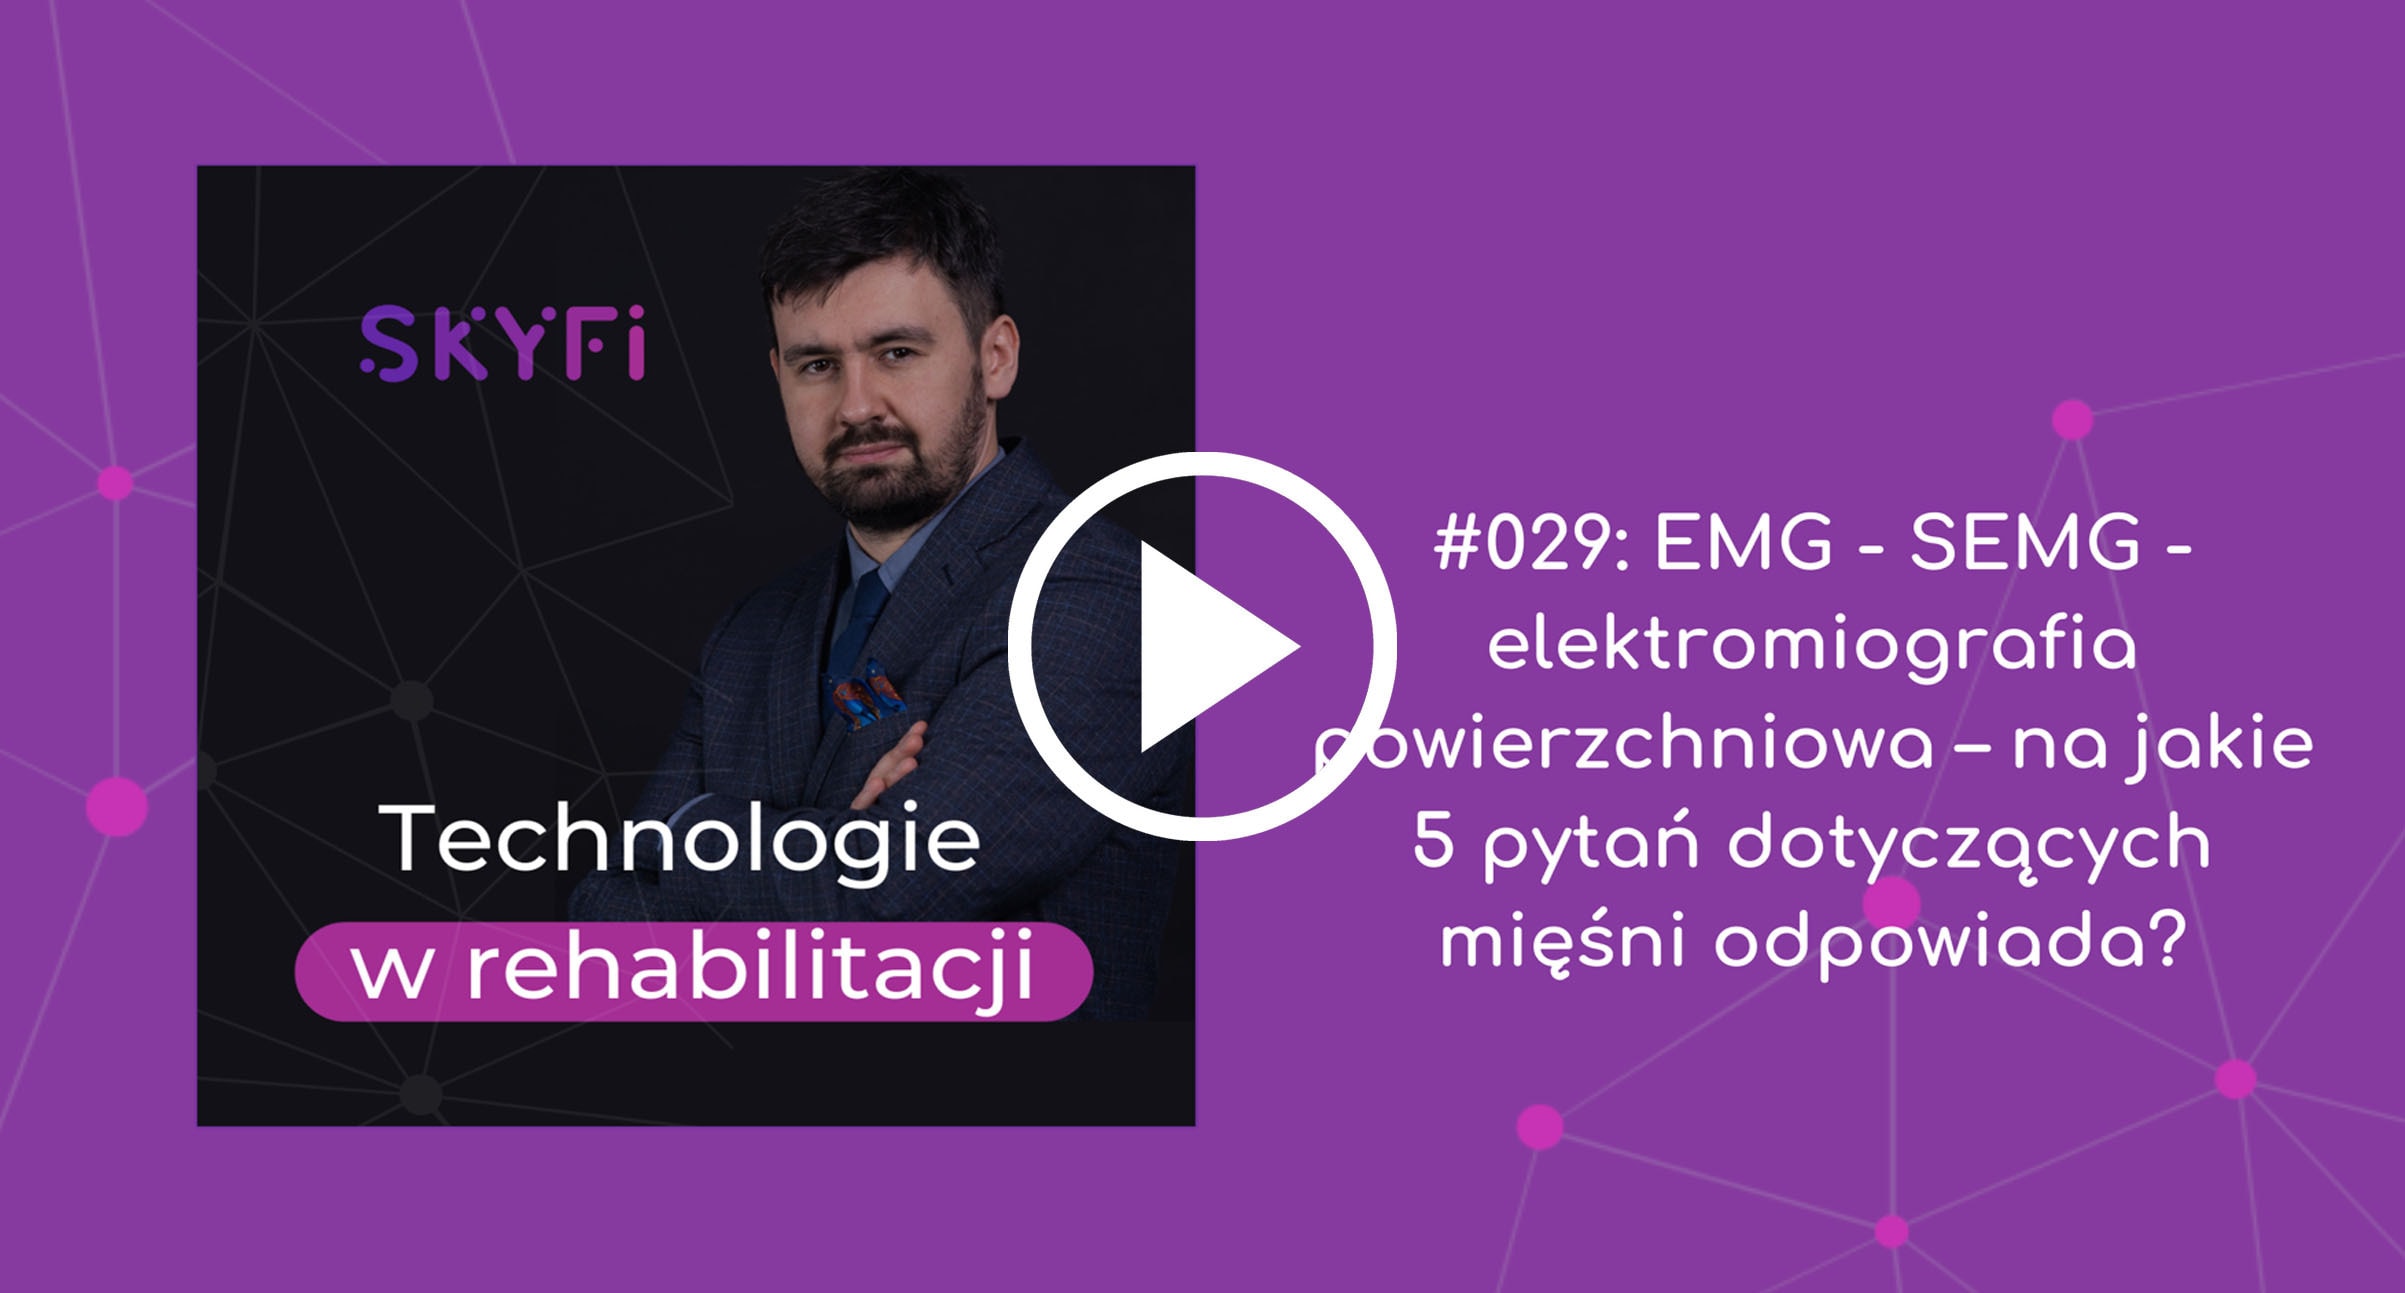 Podcast-29-EMG-elektromiografia-powierzchniowa-Skyfi